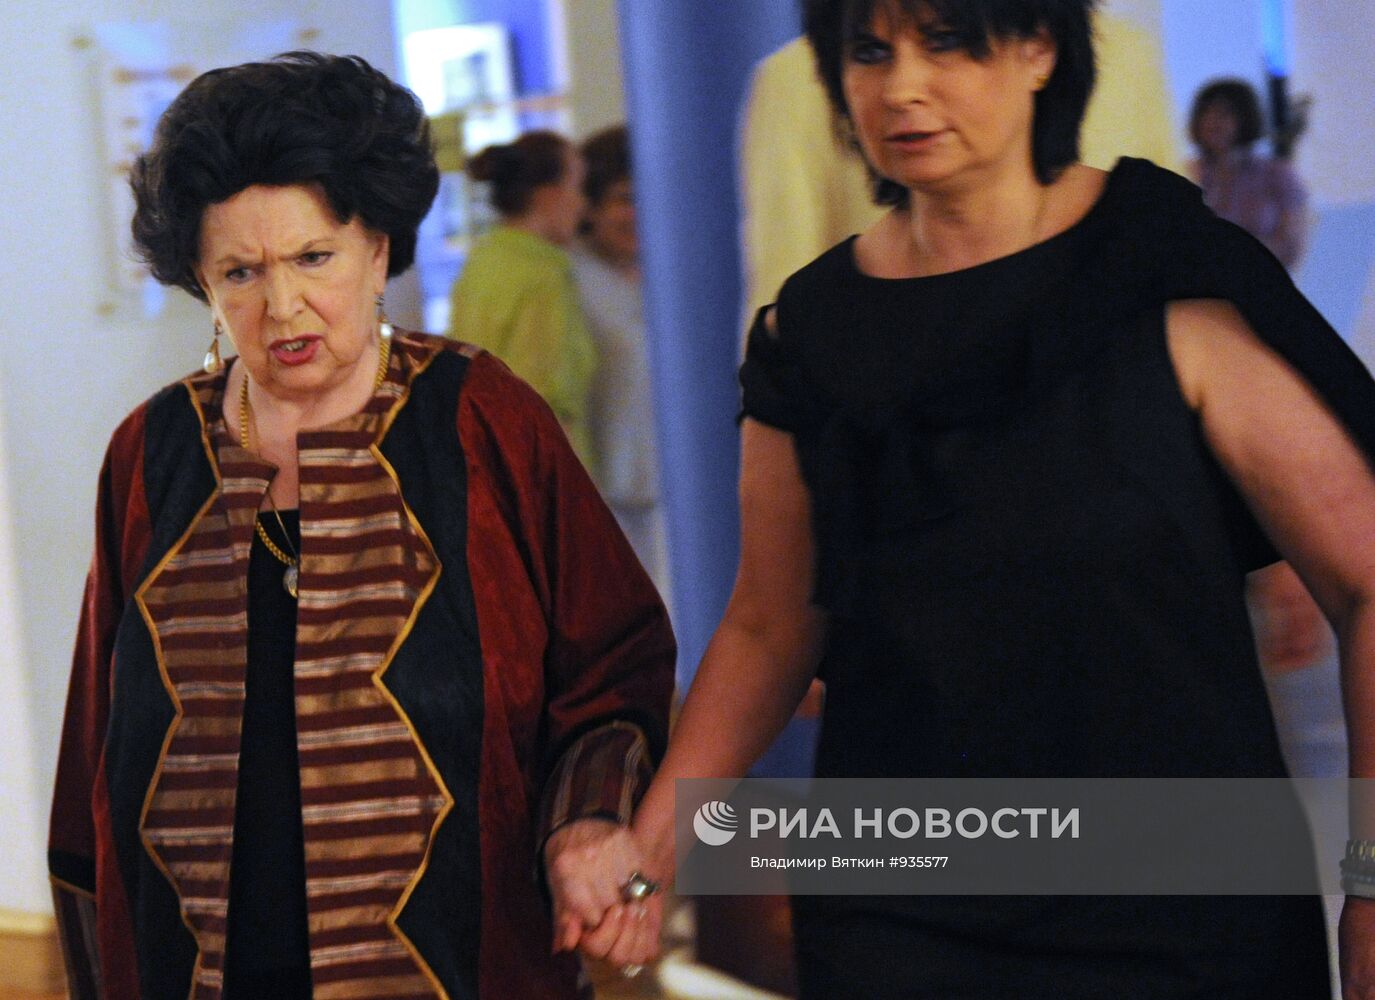 Галина Вишневская и ее дочь Ольга Ростропович